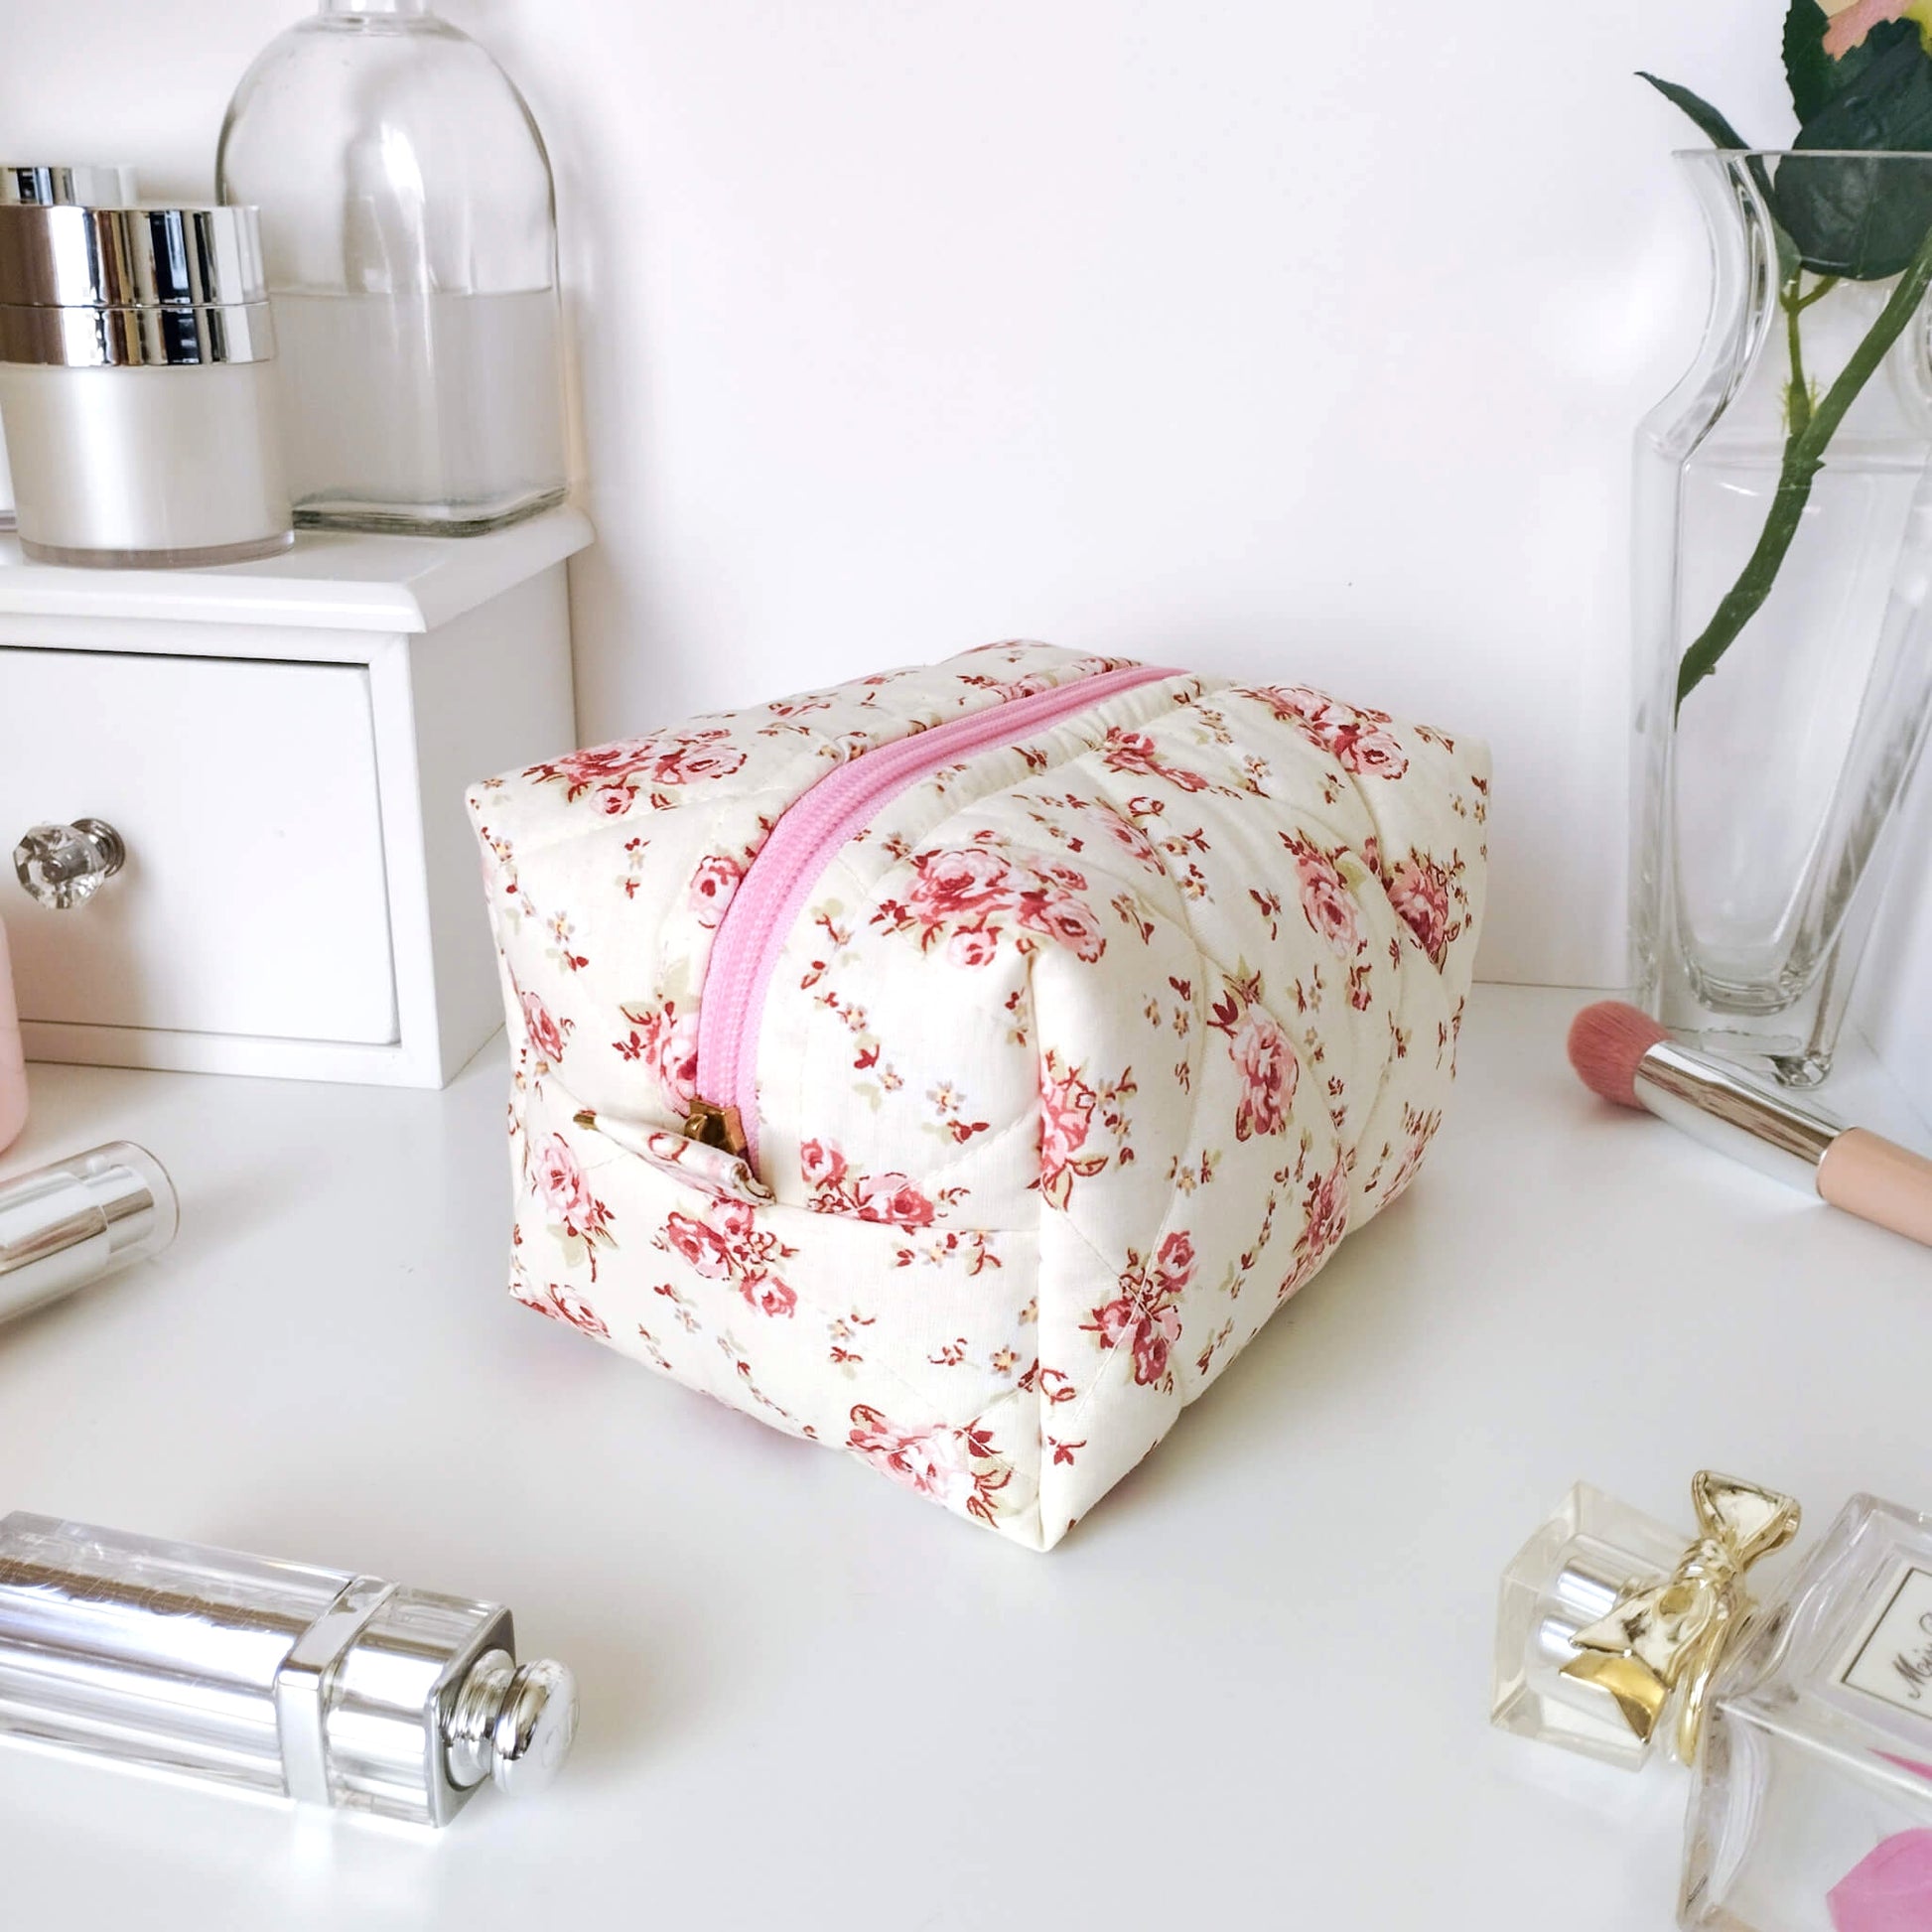 Pink Floral Makeup Bag Handmade